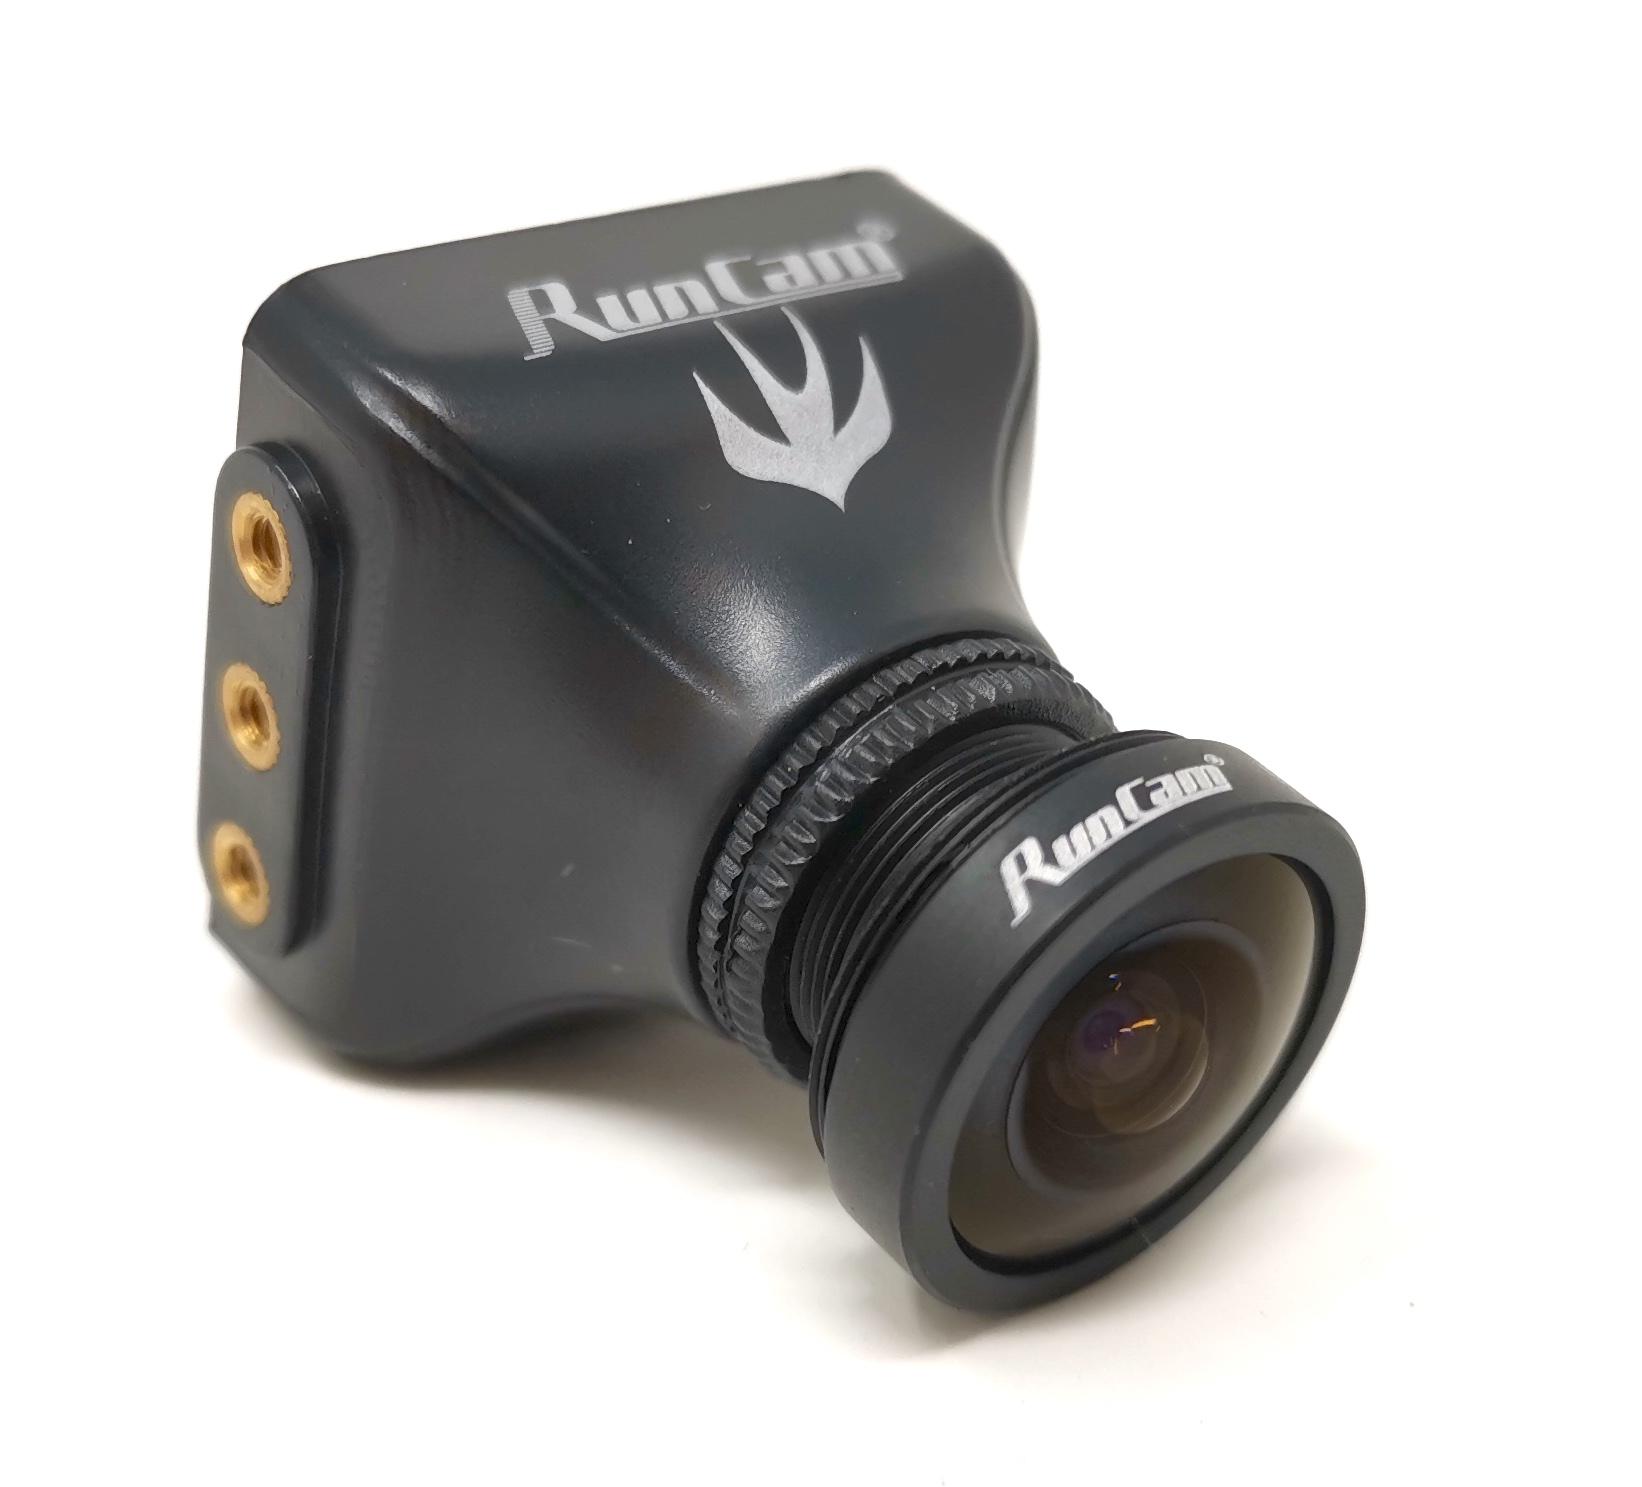 Runcam Swift 2 With Gopro 2.5 Lens